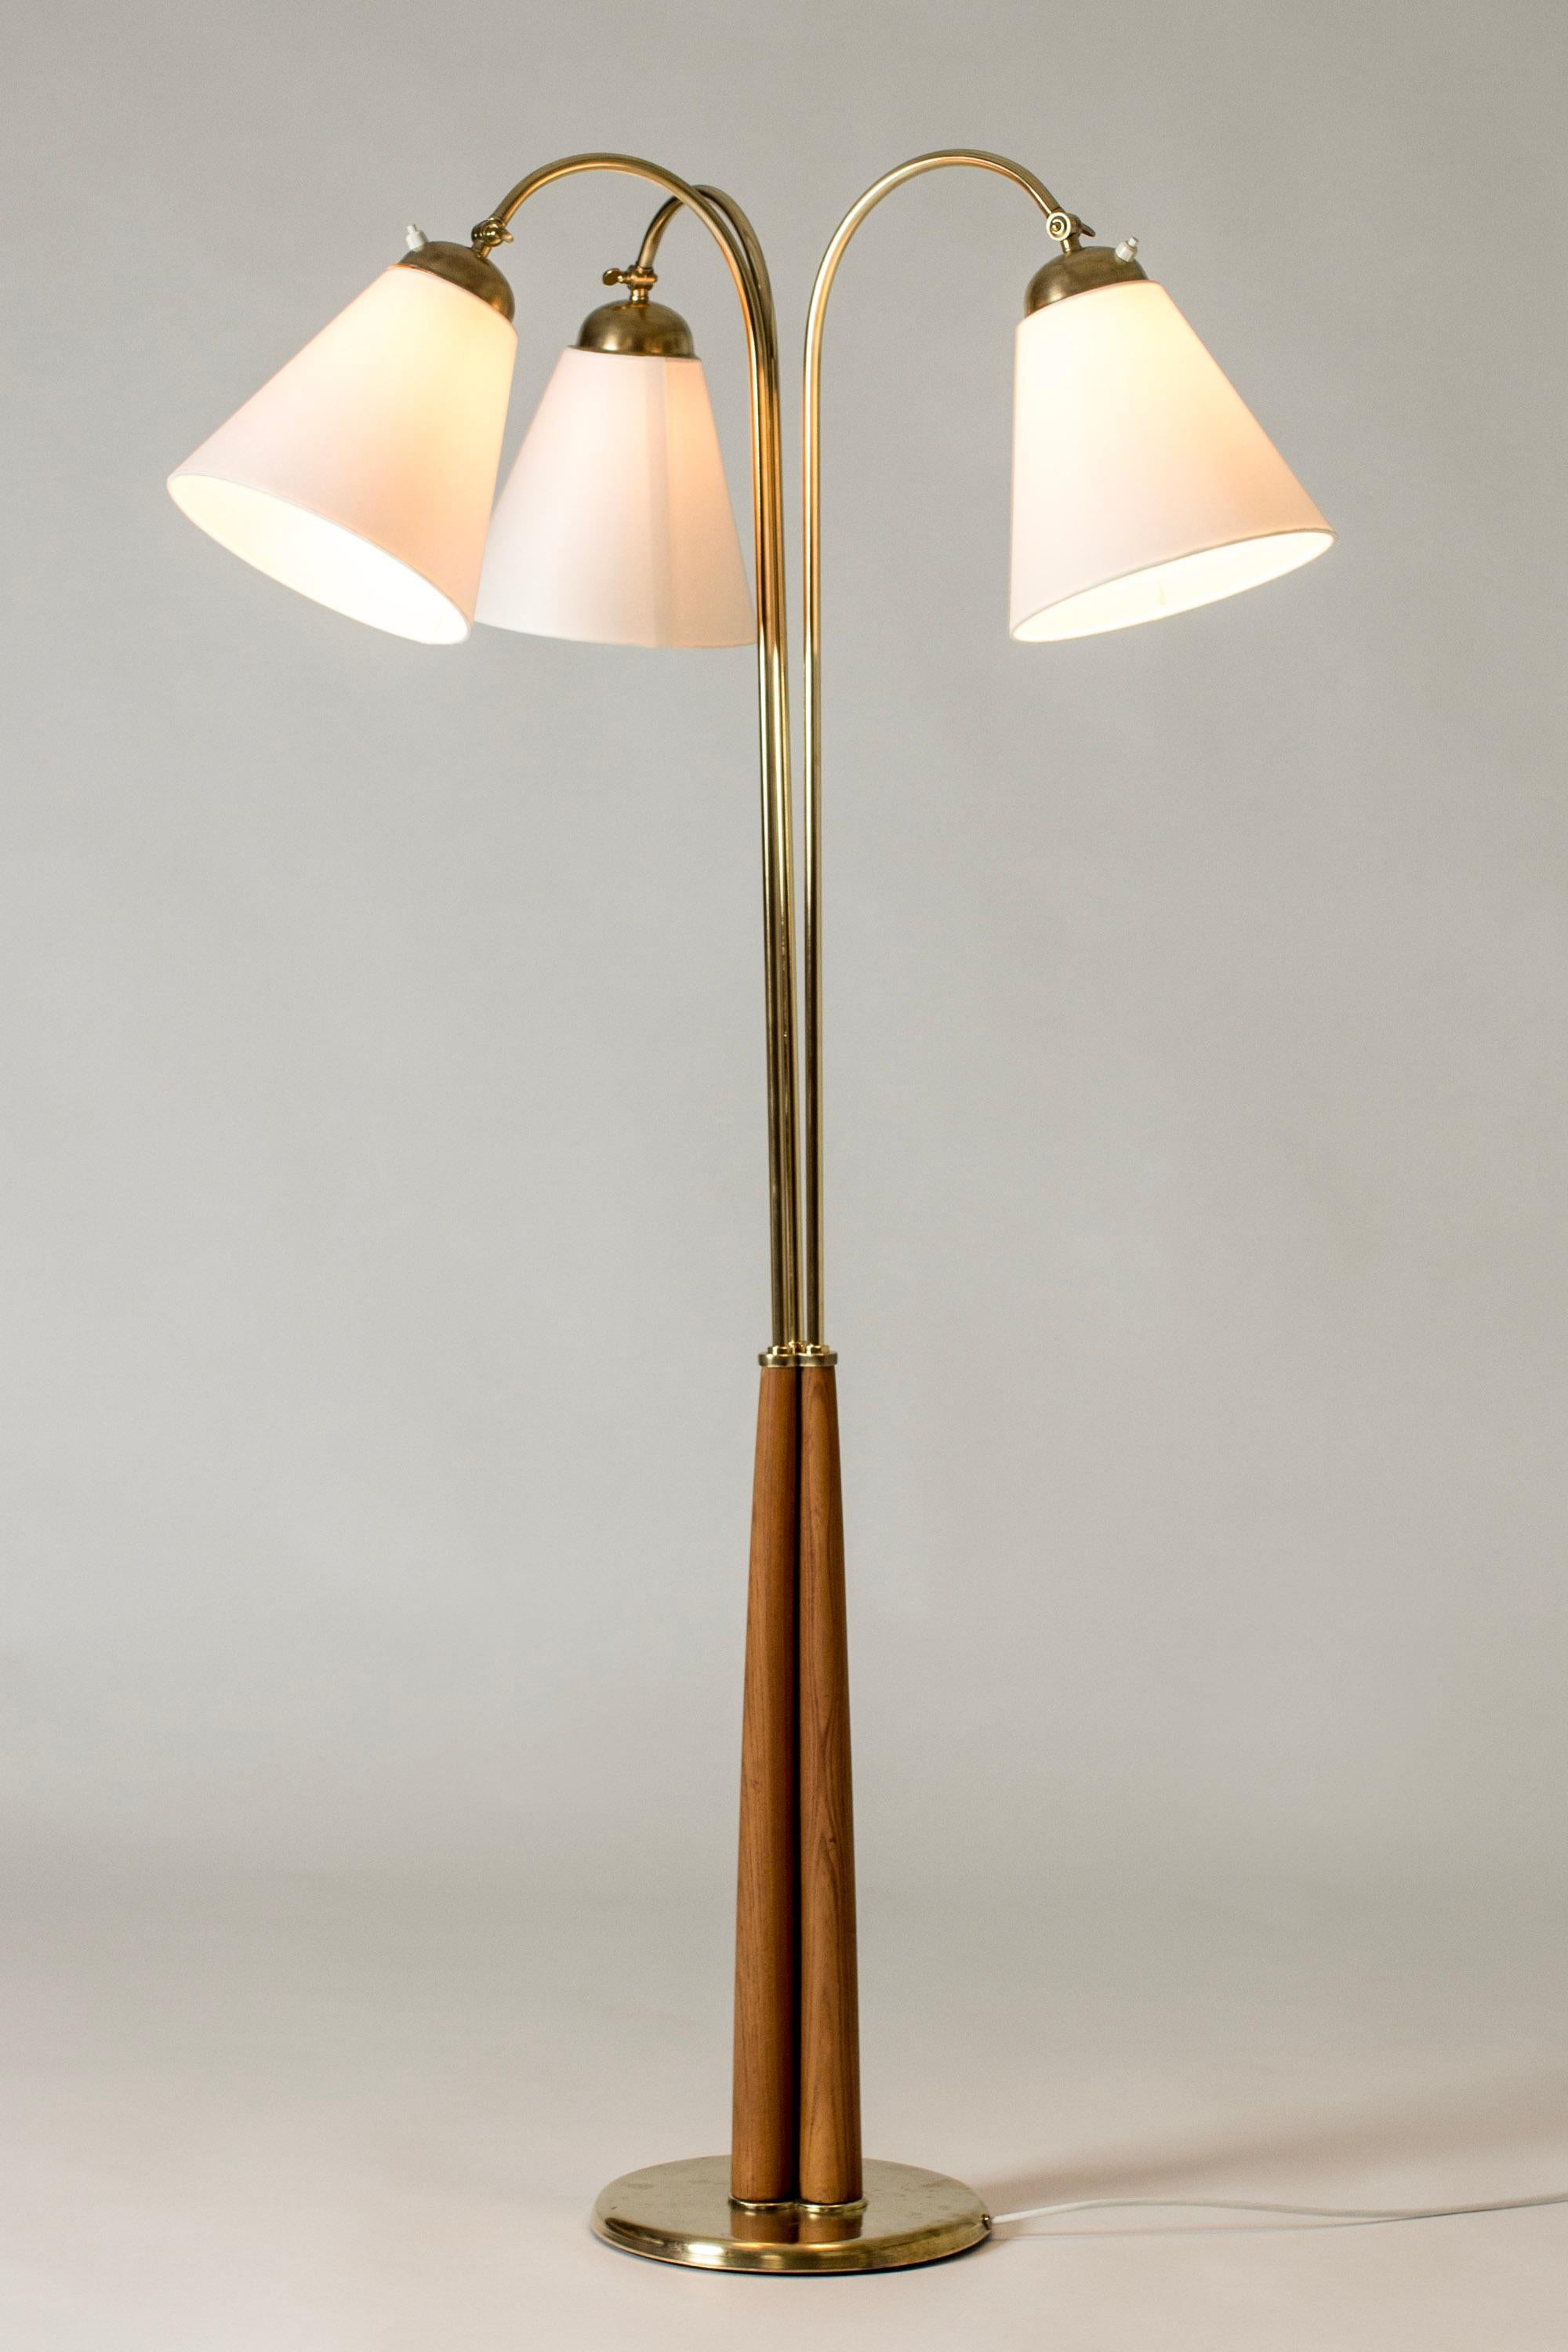 Scandinavian Midcentury Brass Floor Lamp, Sweden, 1940s In Good Condition For Sale In Stockholm, SE